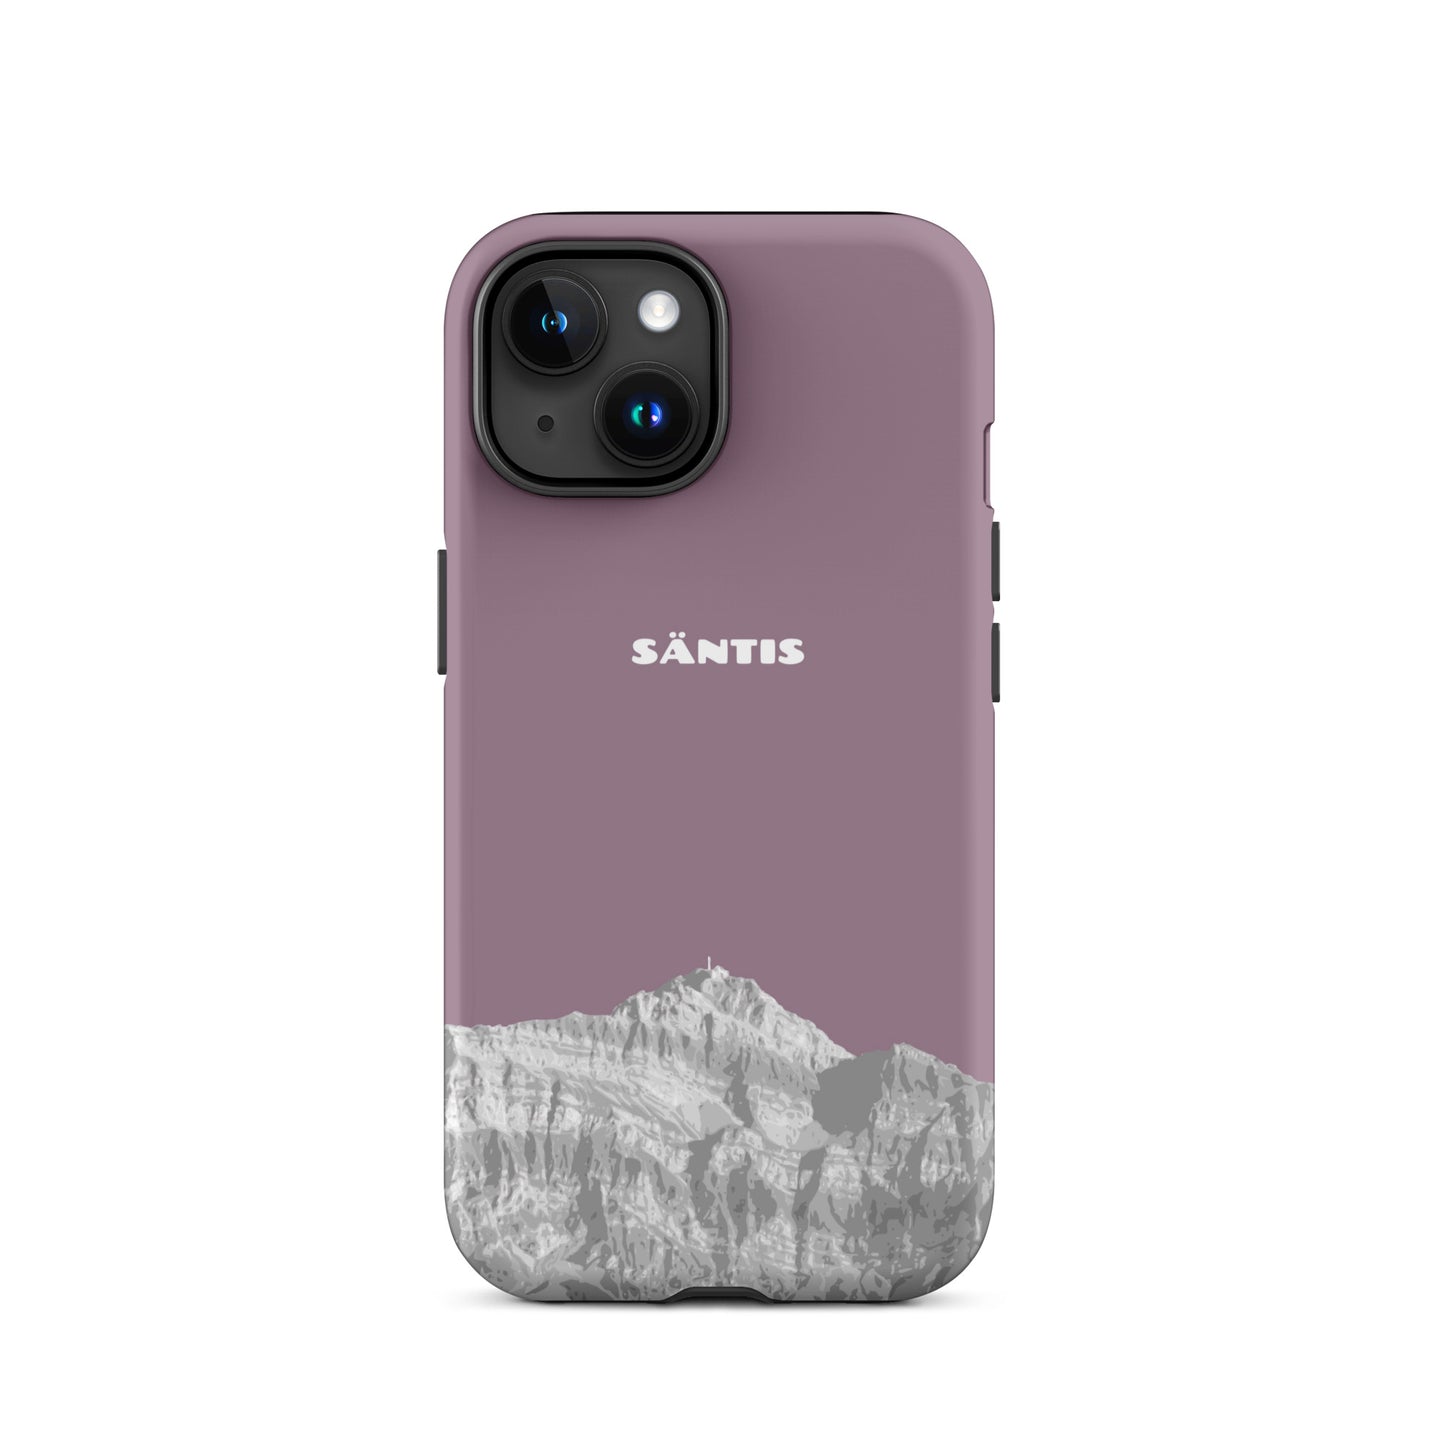 Hülle für das iPhone 15 von Apple in der Farbe Pastellviolett, dass den Säntis im Alpstein zeigt.